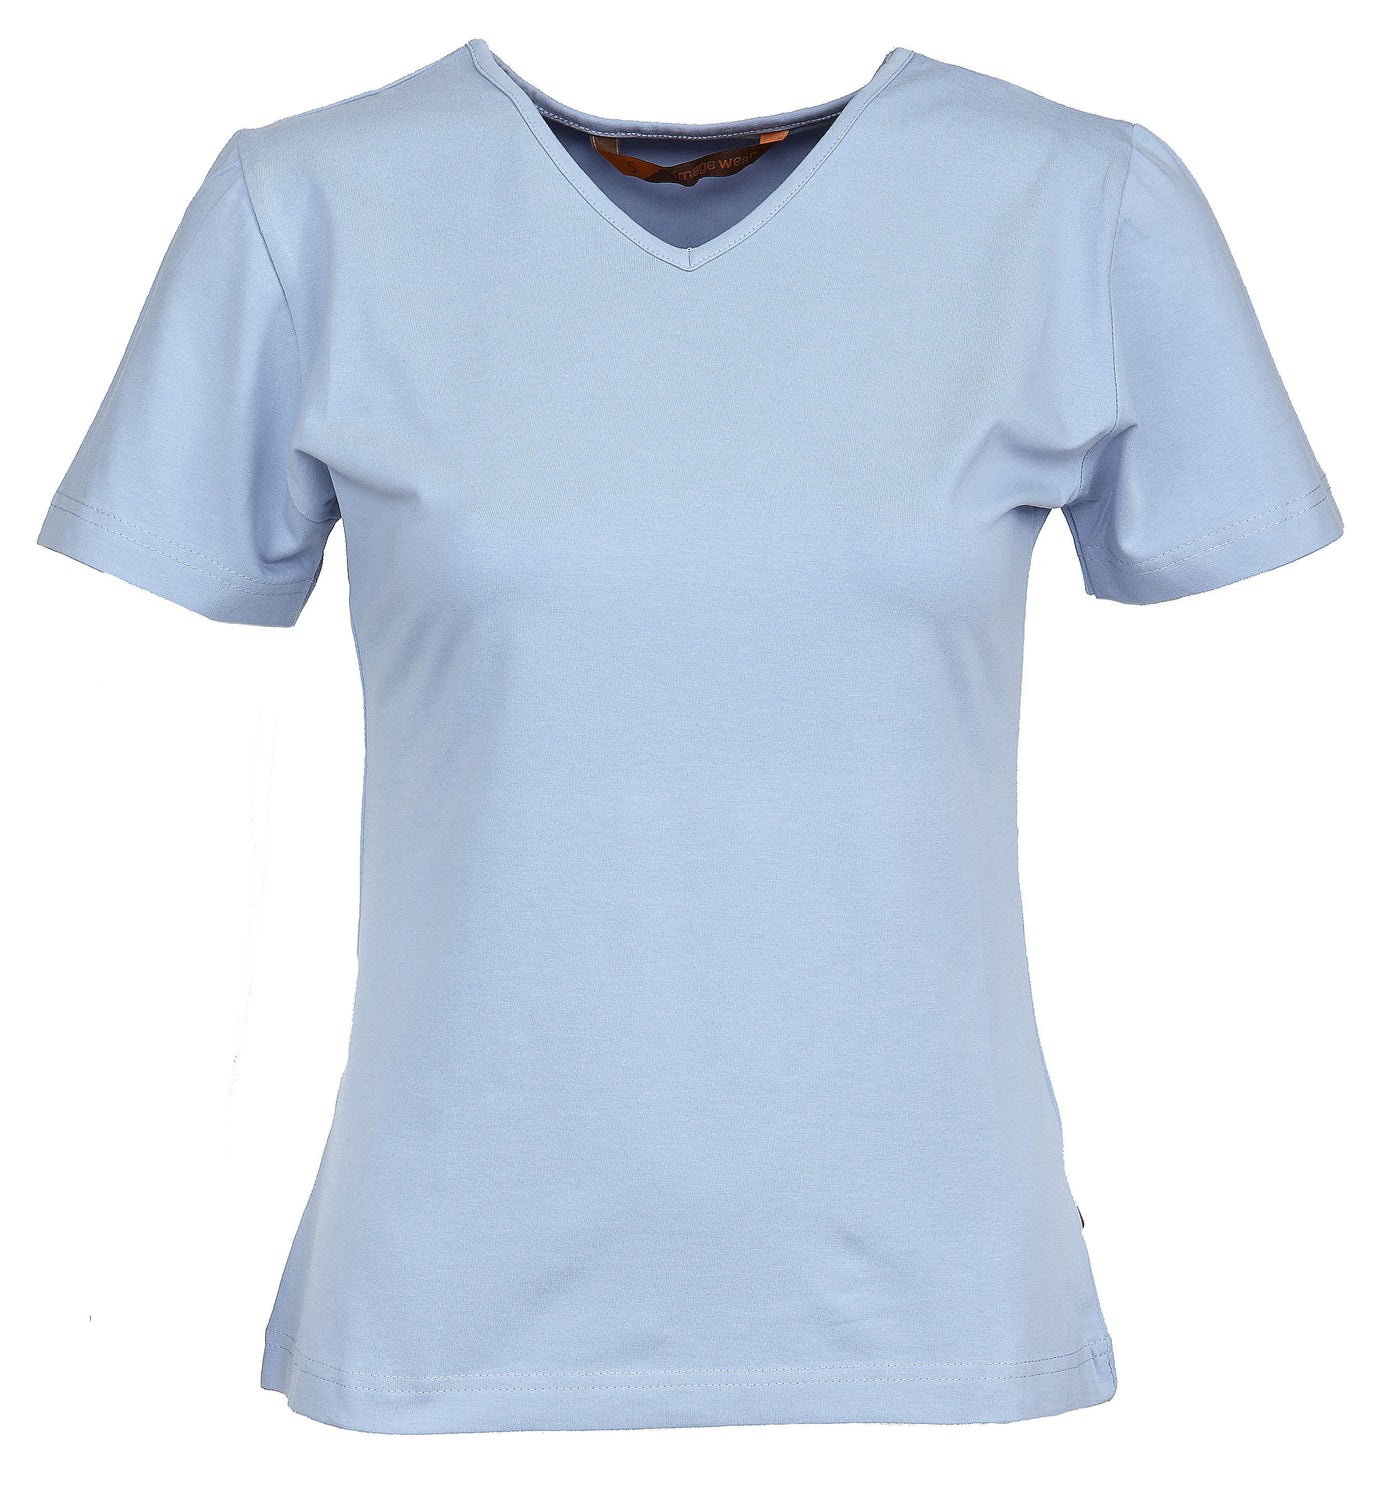 Aavistuksen vartalonmyötäinen naisten T-paita. Joustava ja laadukas materiaali. Kestää hyvin toistuvia pesuja. Paita pitää muotonsa eikä nukkaannu herkästi. Laadukas T-paita työkäyttöön ja vapaa-aikaan.